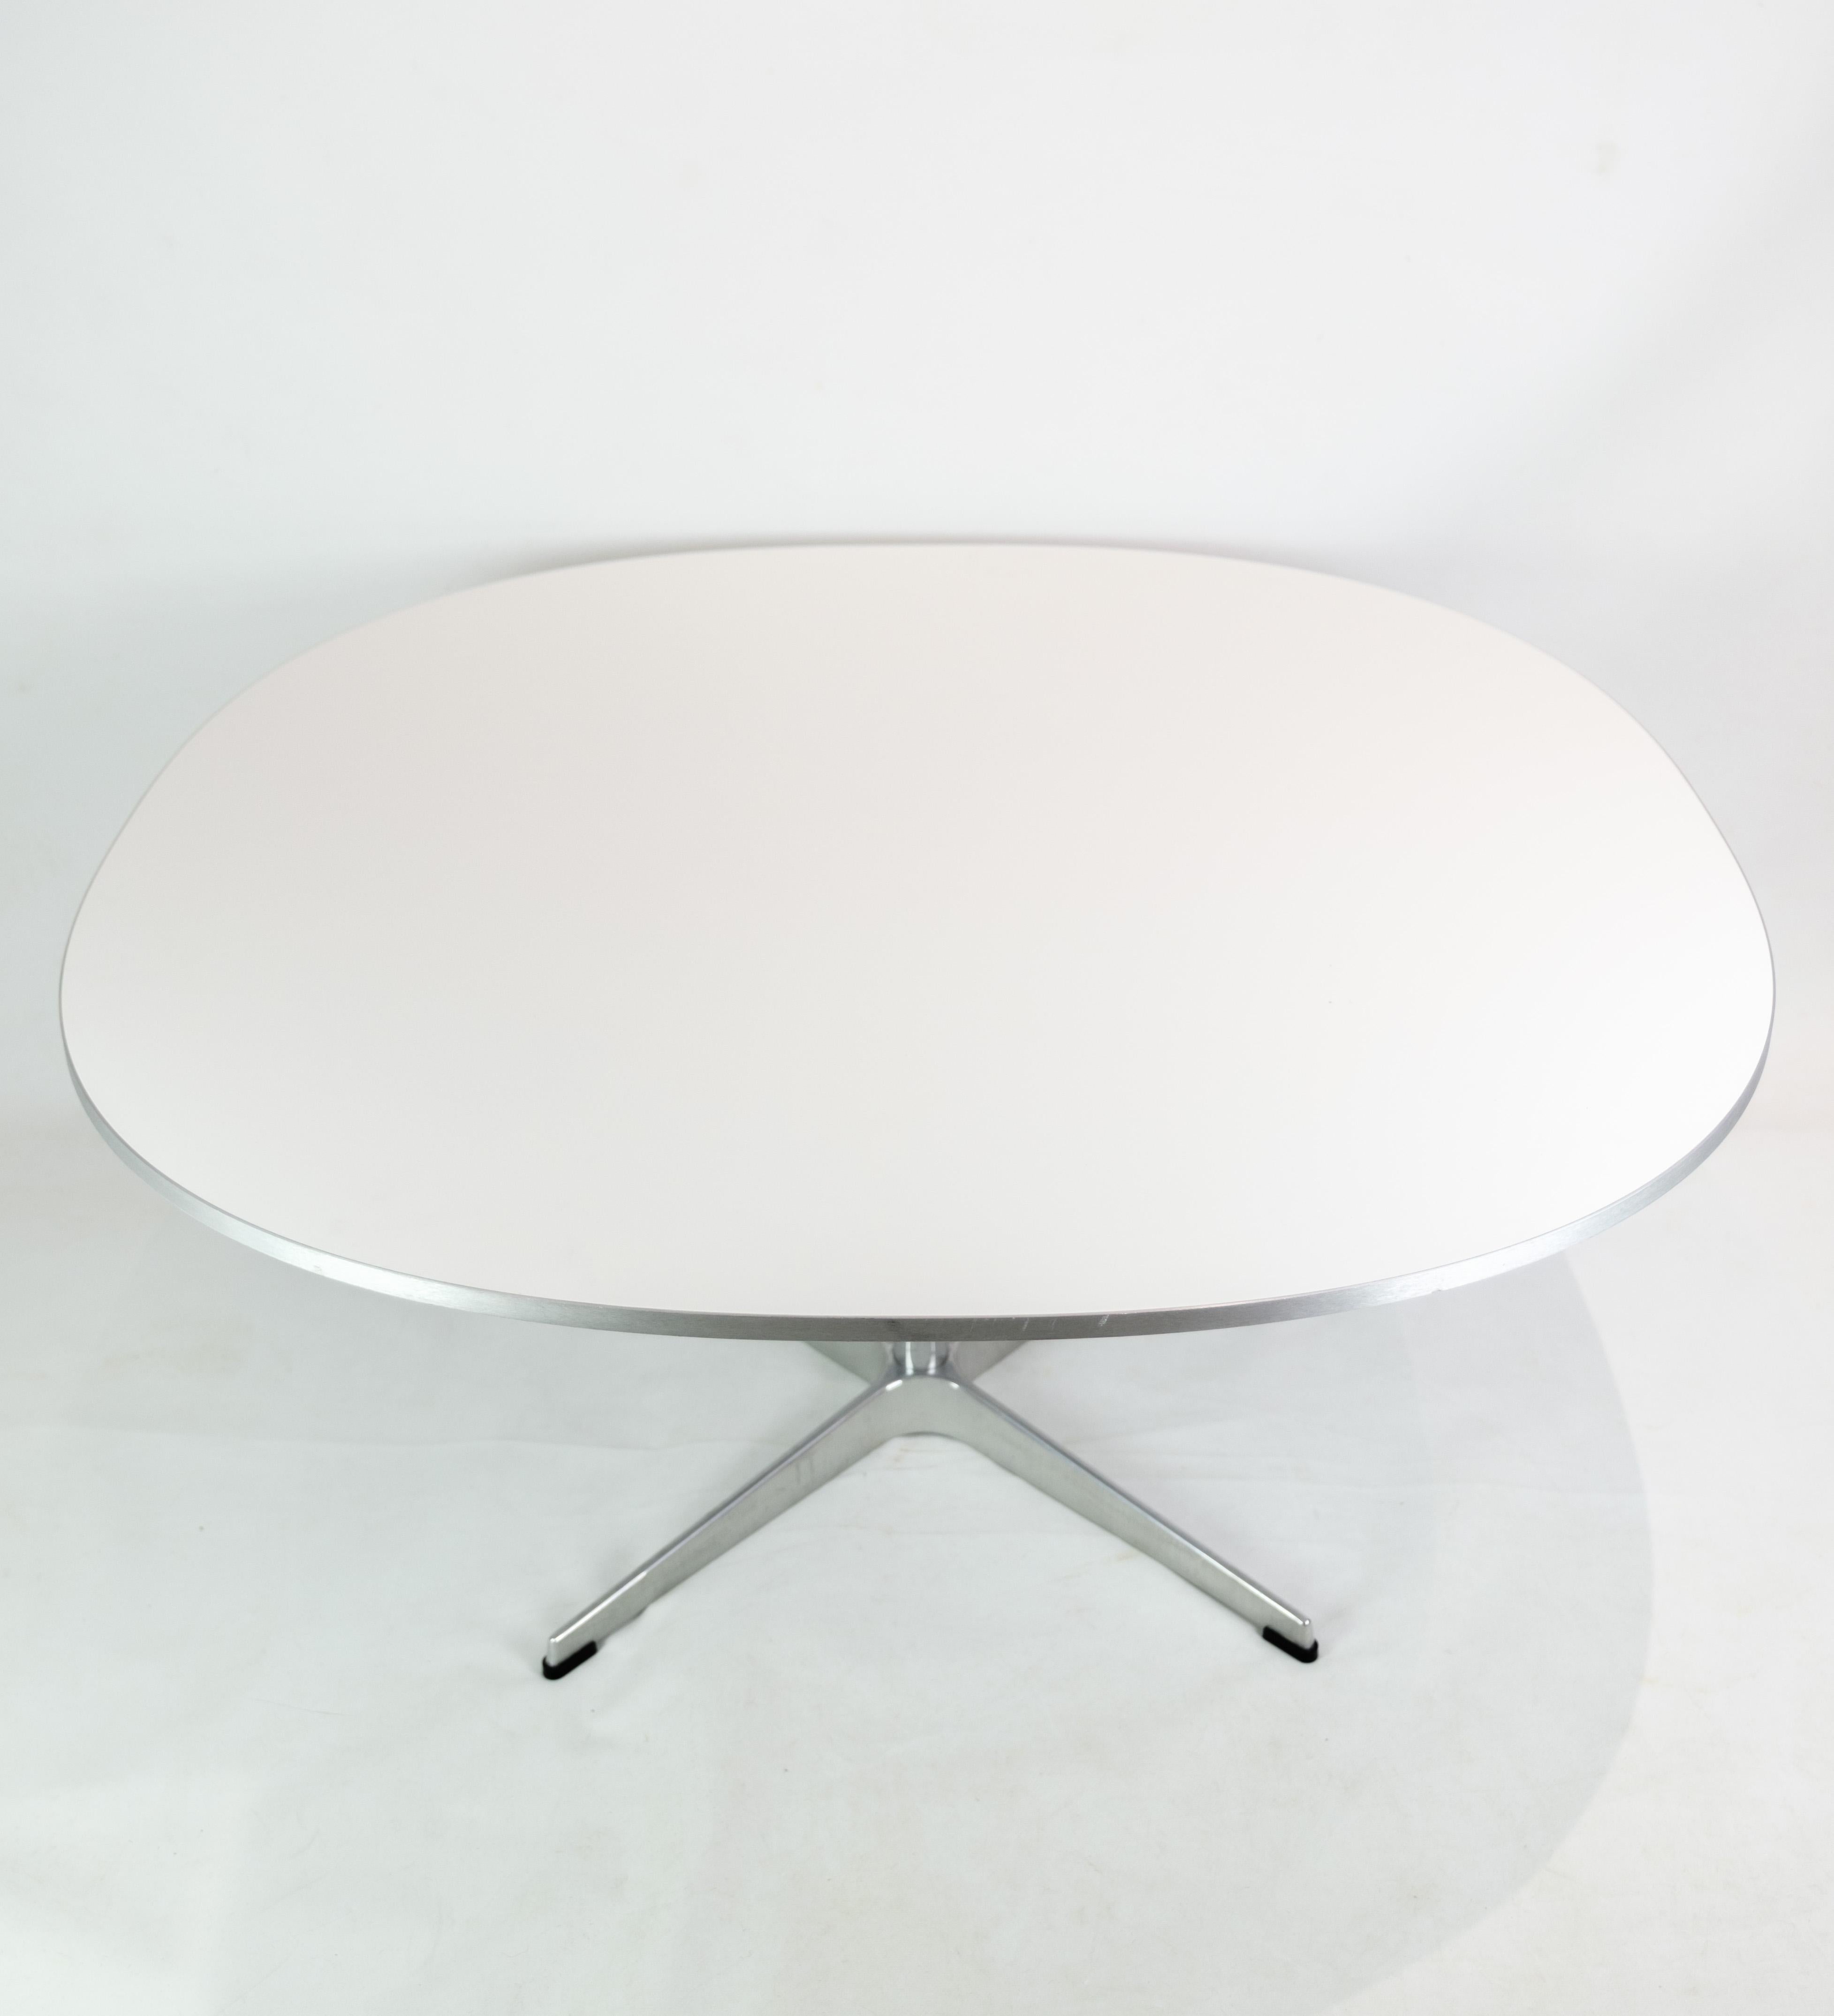 Couchtisch, entworfen von Piet Hein/Bruno Mathsson/Arne Jacobsen und hergestellt von Fritz Hansen im Jahr 2018. Der Tisch hat weißes Laminat mit silberner Aluminiumkante und Aluminiumrahmen. Gestempelt mit Originalmarke und Produktionsnummer.